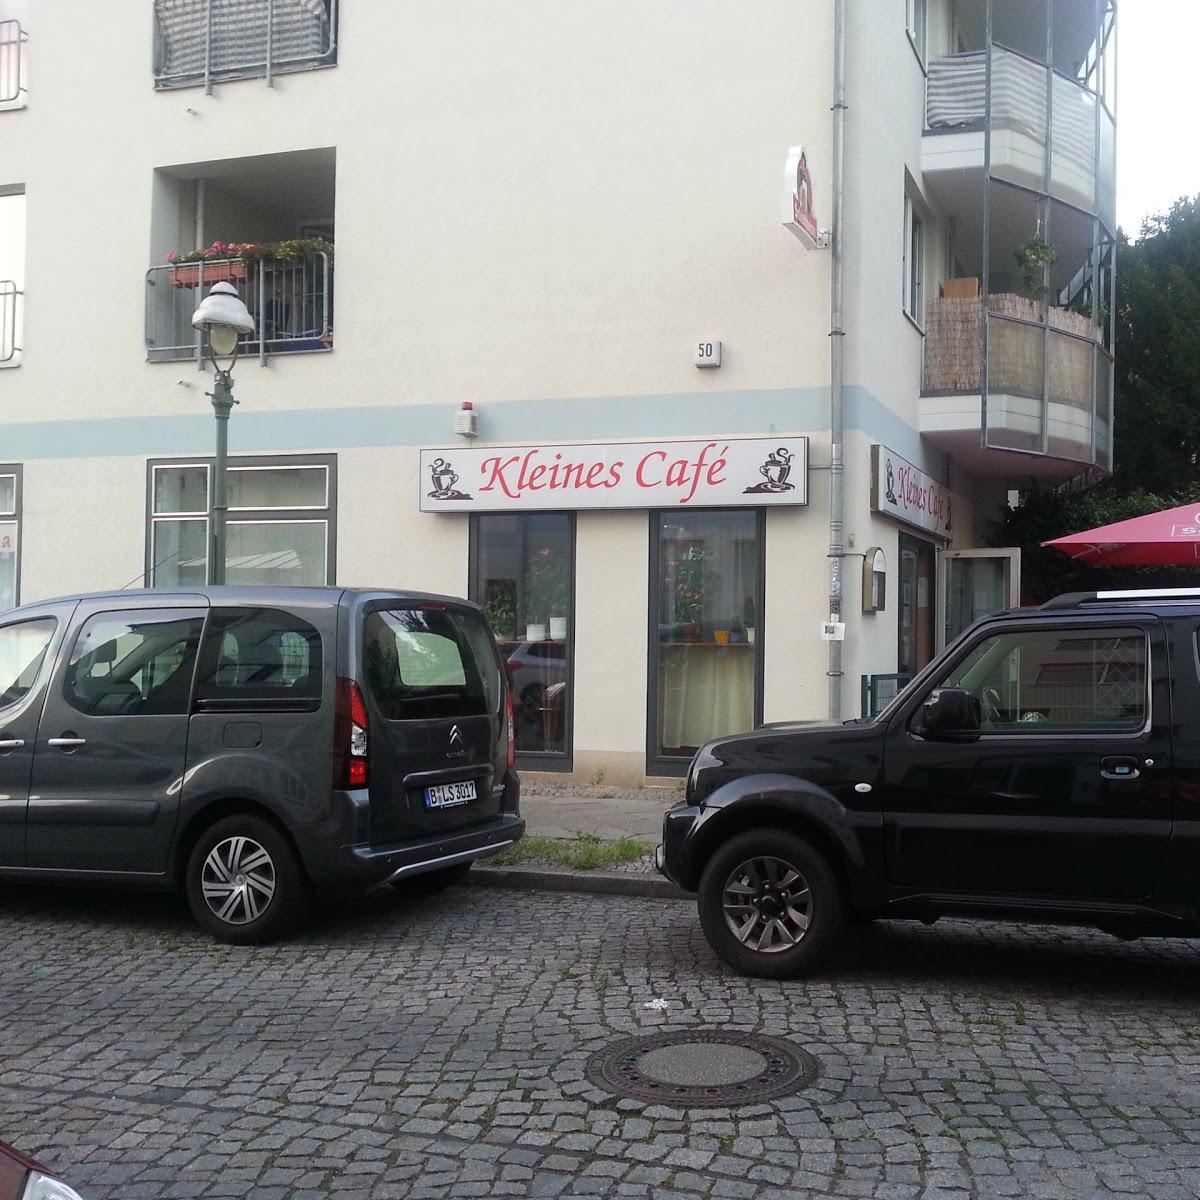 Restaurant "Kleines Café" in Berlin